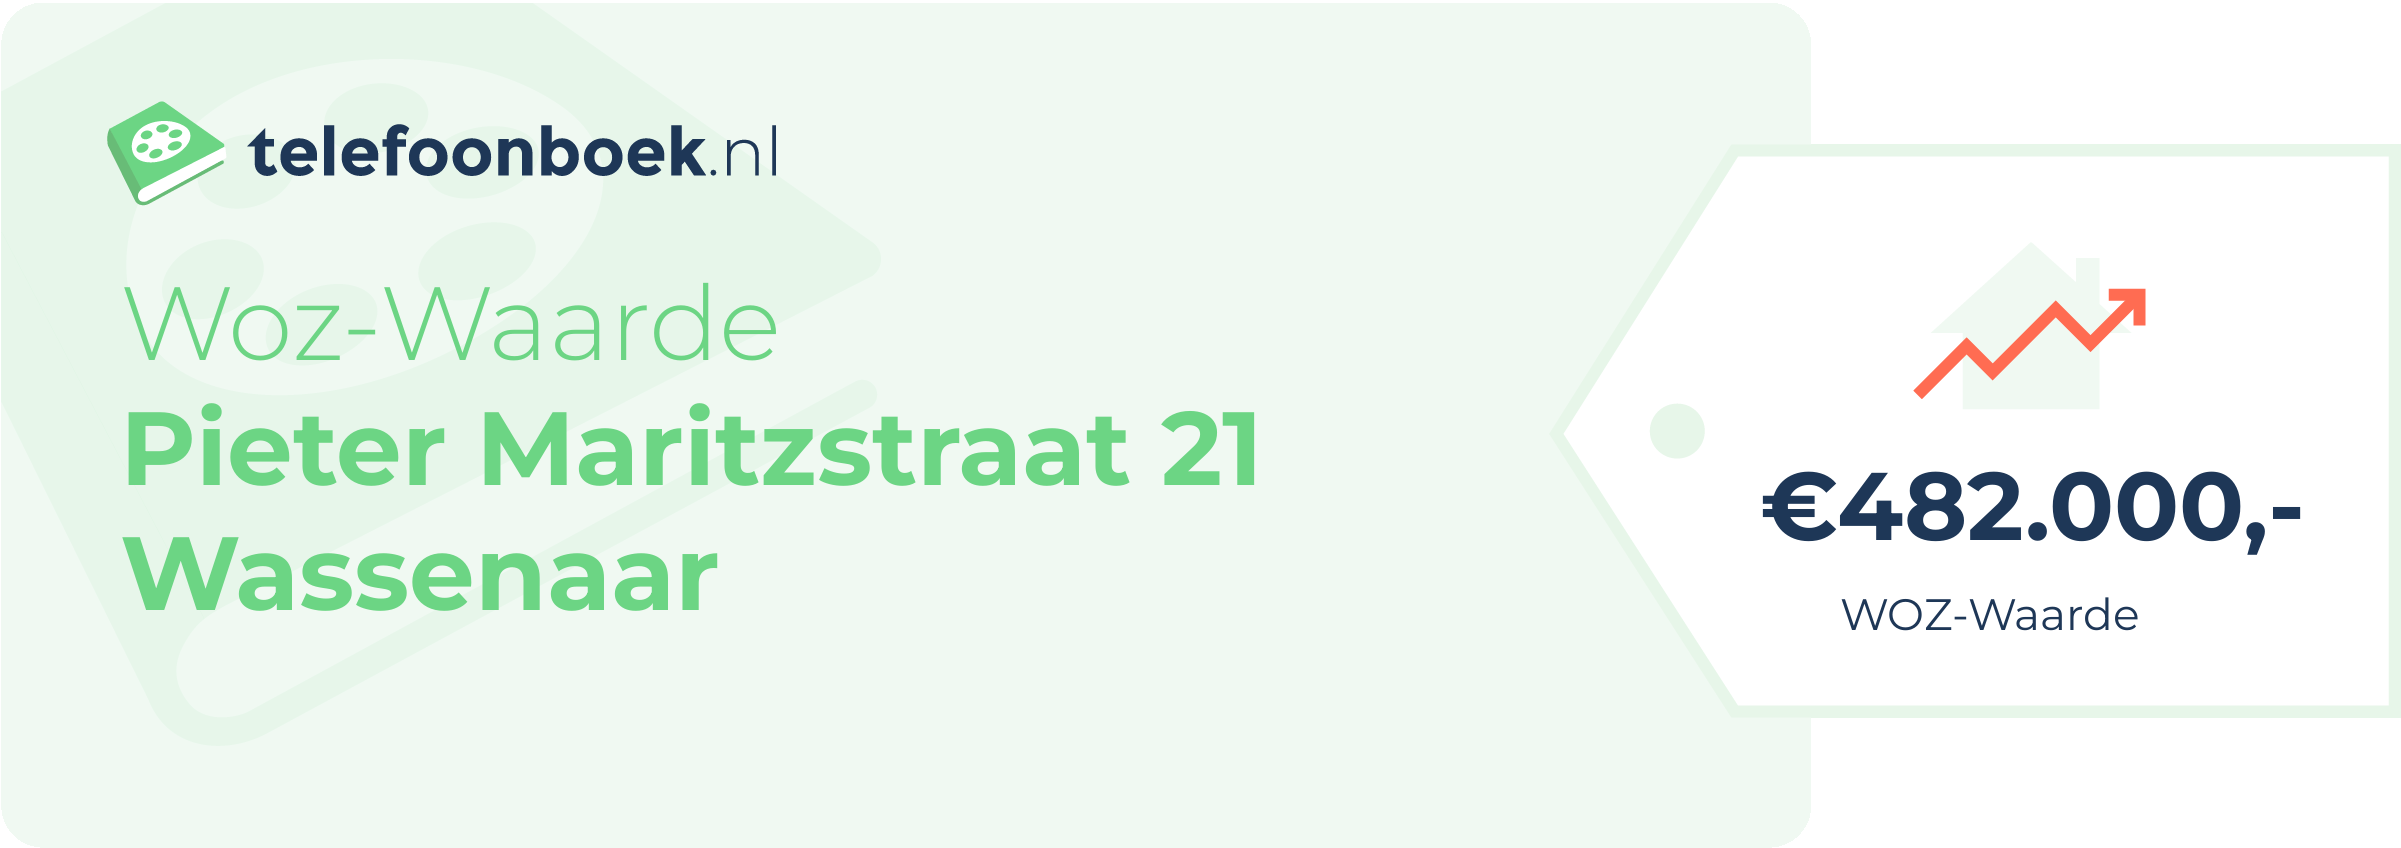 WOZ-waarde Pieter Maritzstraat 21 Wassenaar